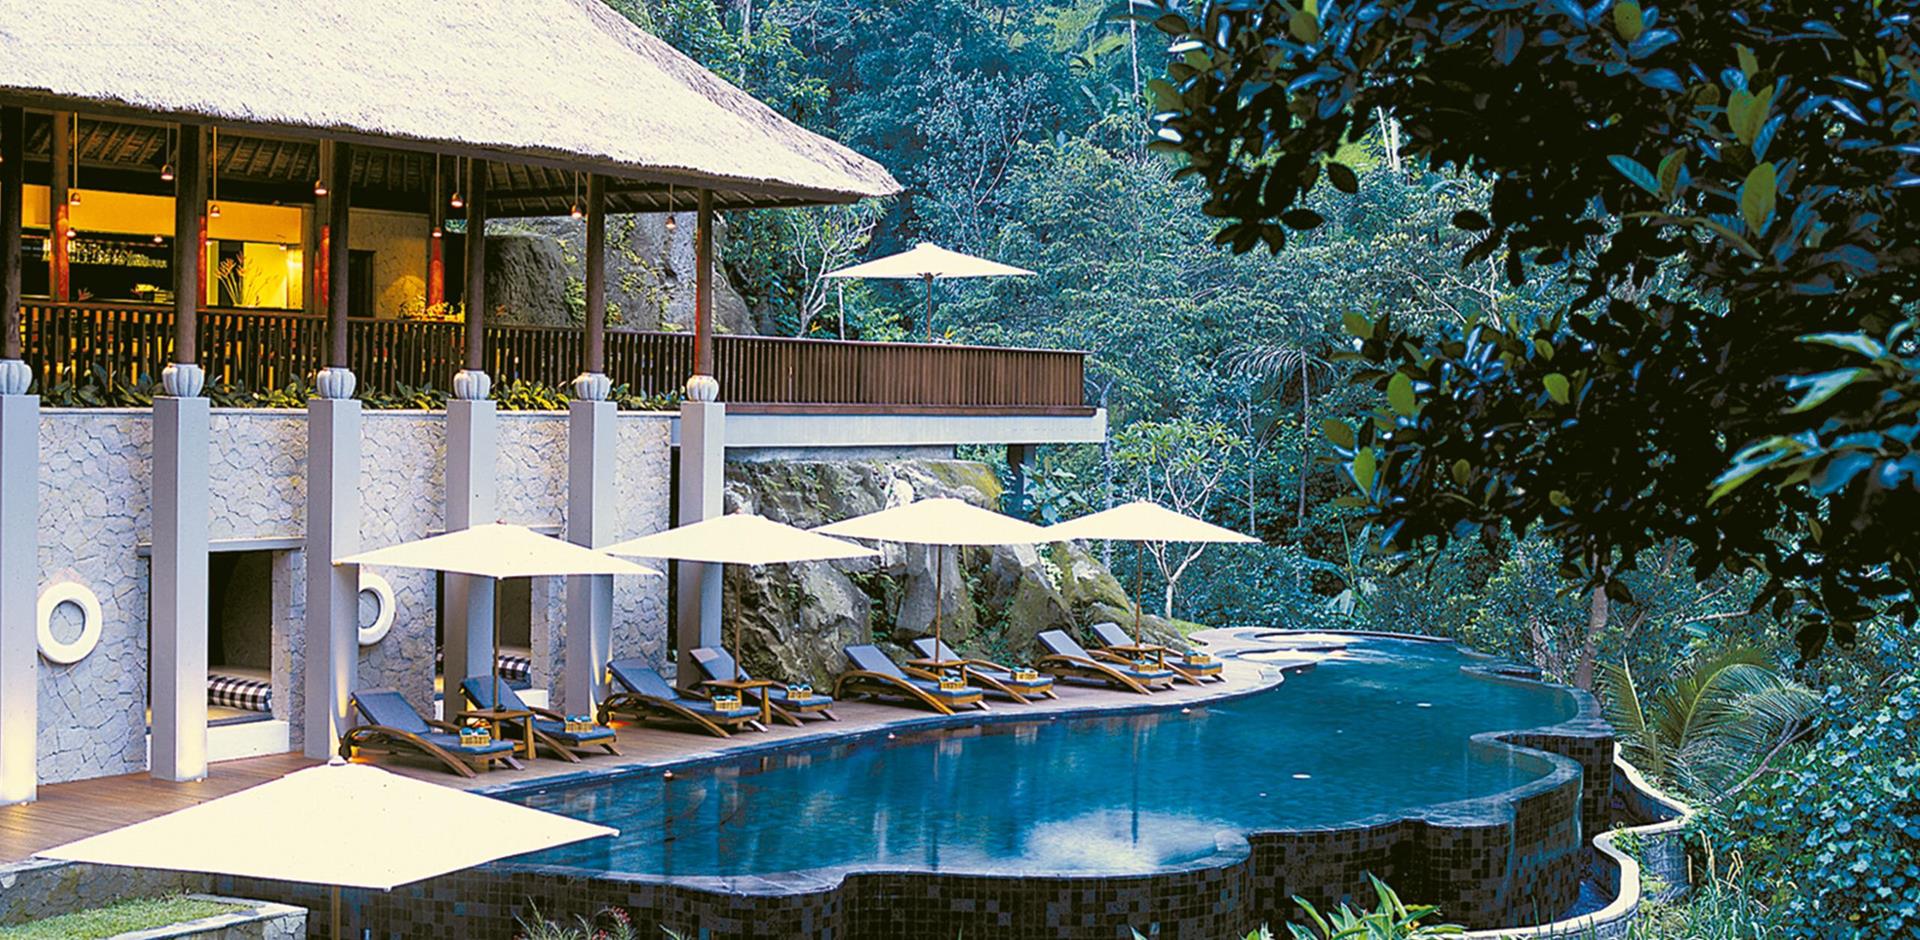 Poolside and exterior, Maya Ubud Resort & Spa, Indonesia